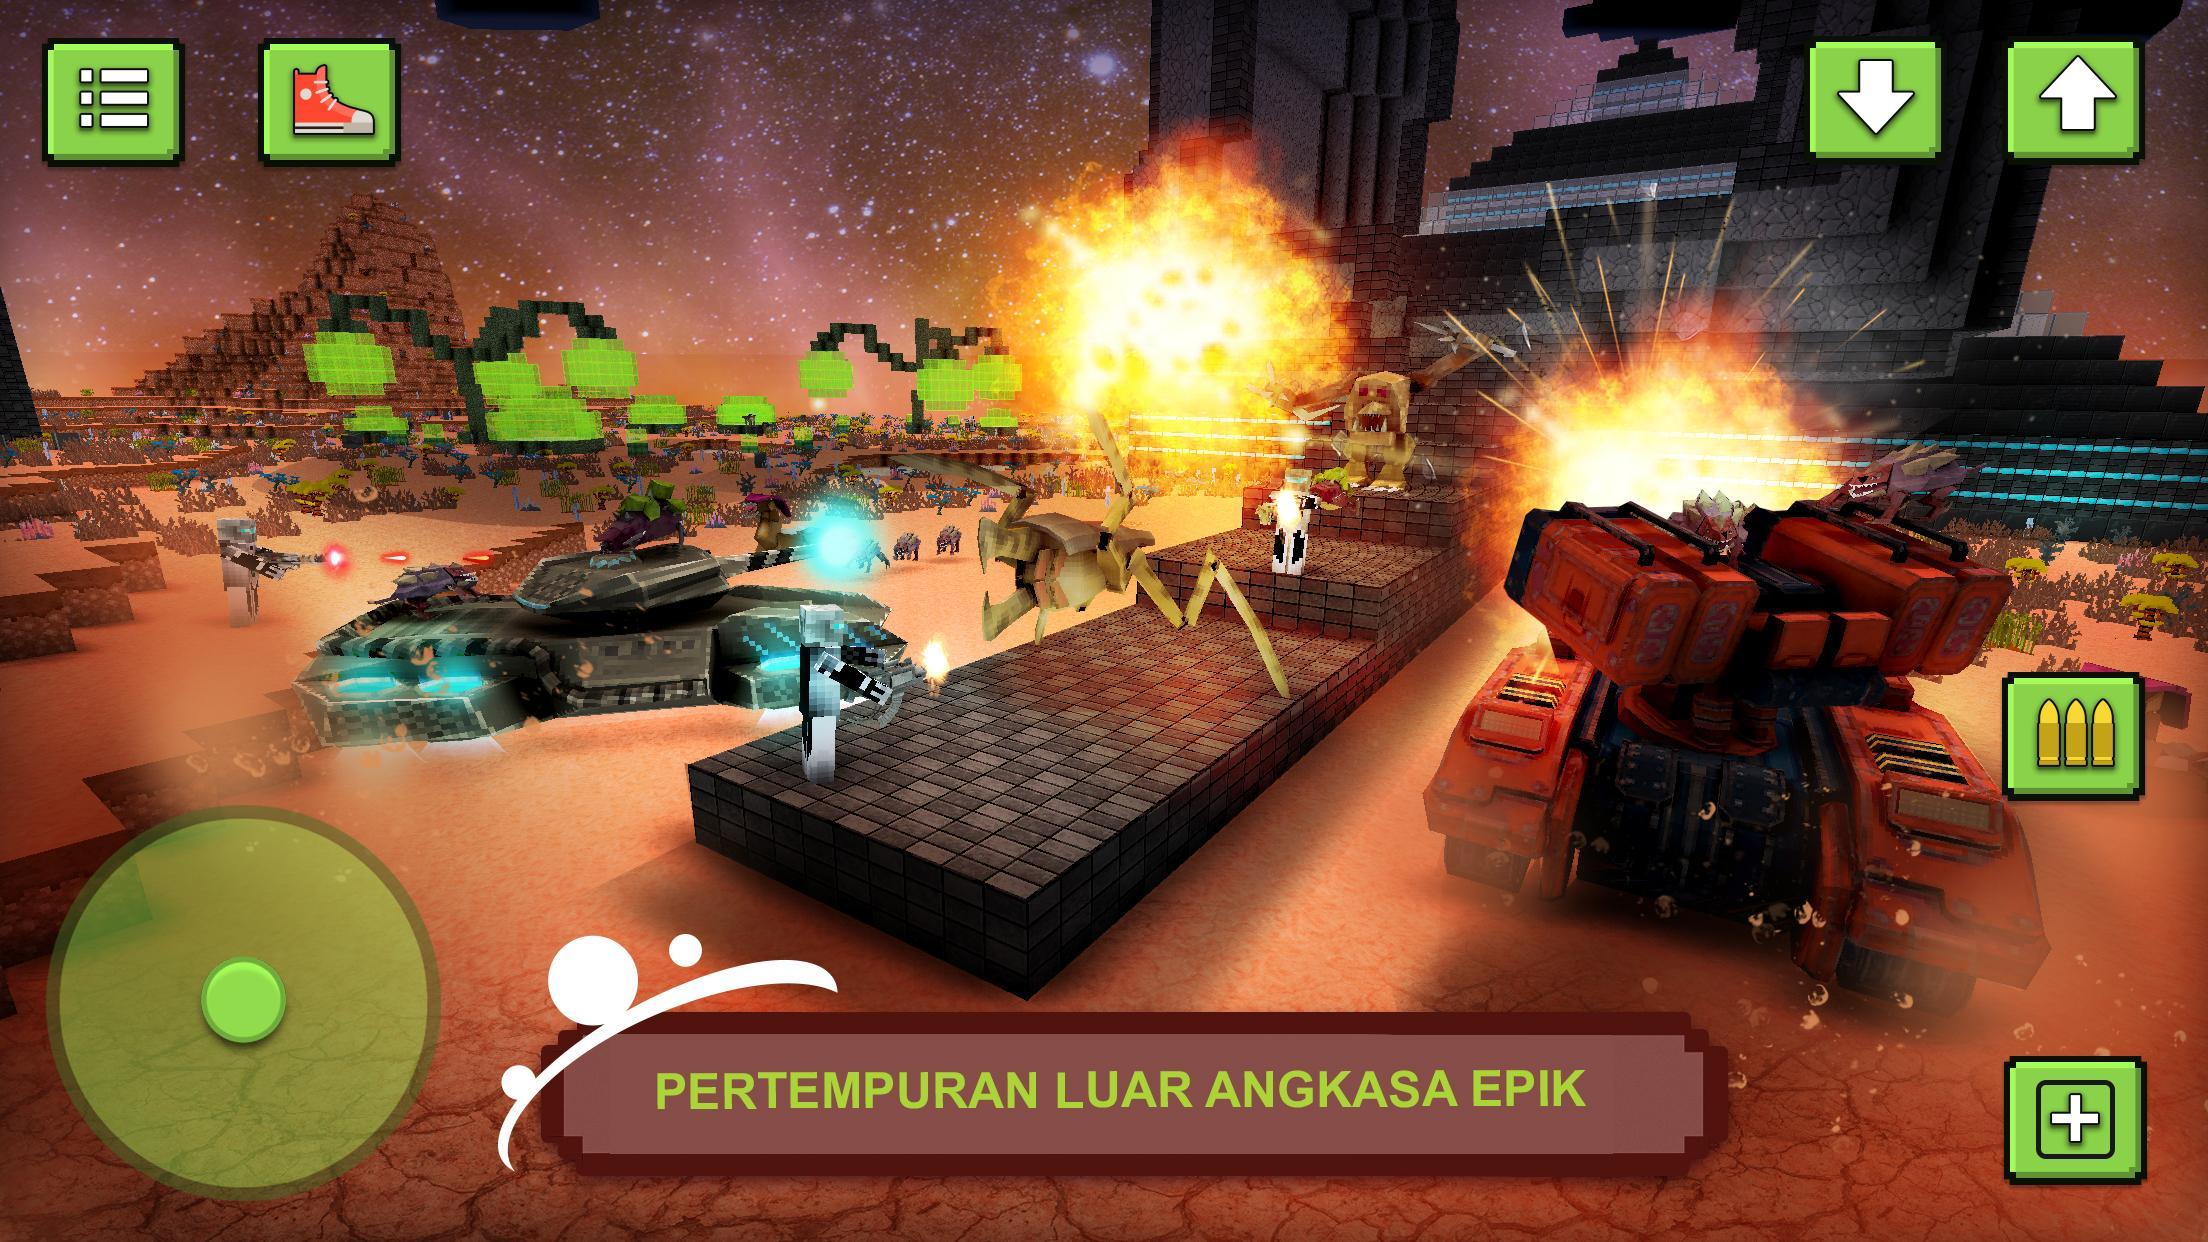 Space Survival Craft Menembak Alien Membangun For Android Apk Download - ayo hancurkan bumi alien simulator roblox indonesia